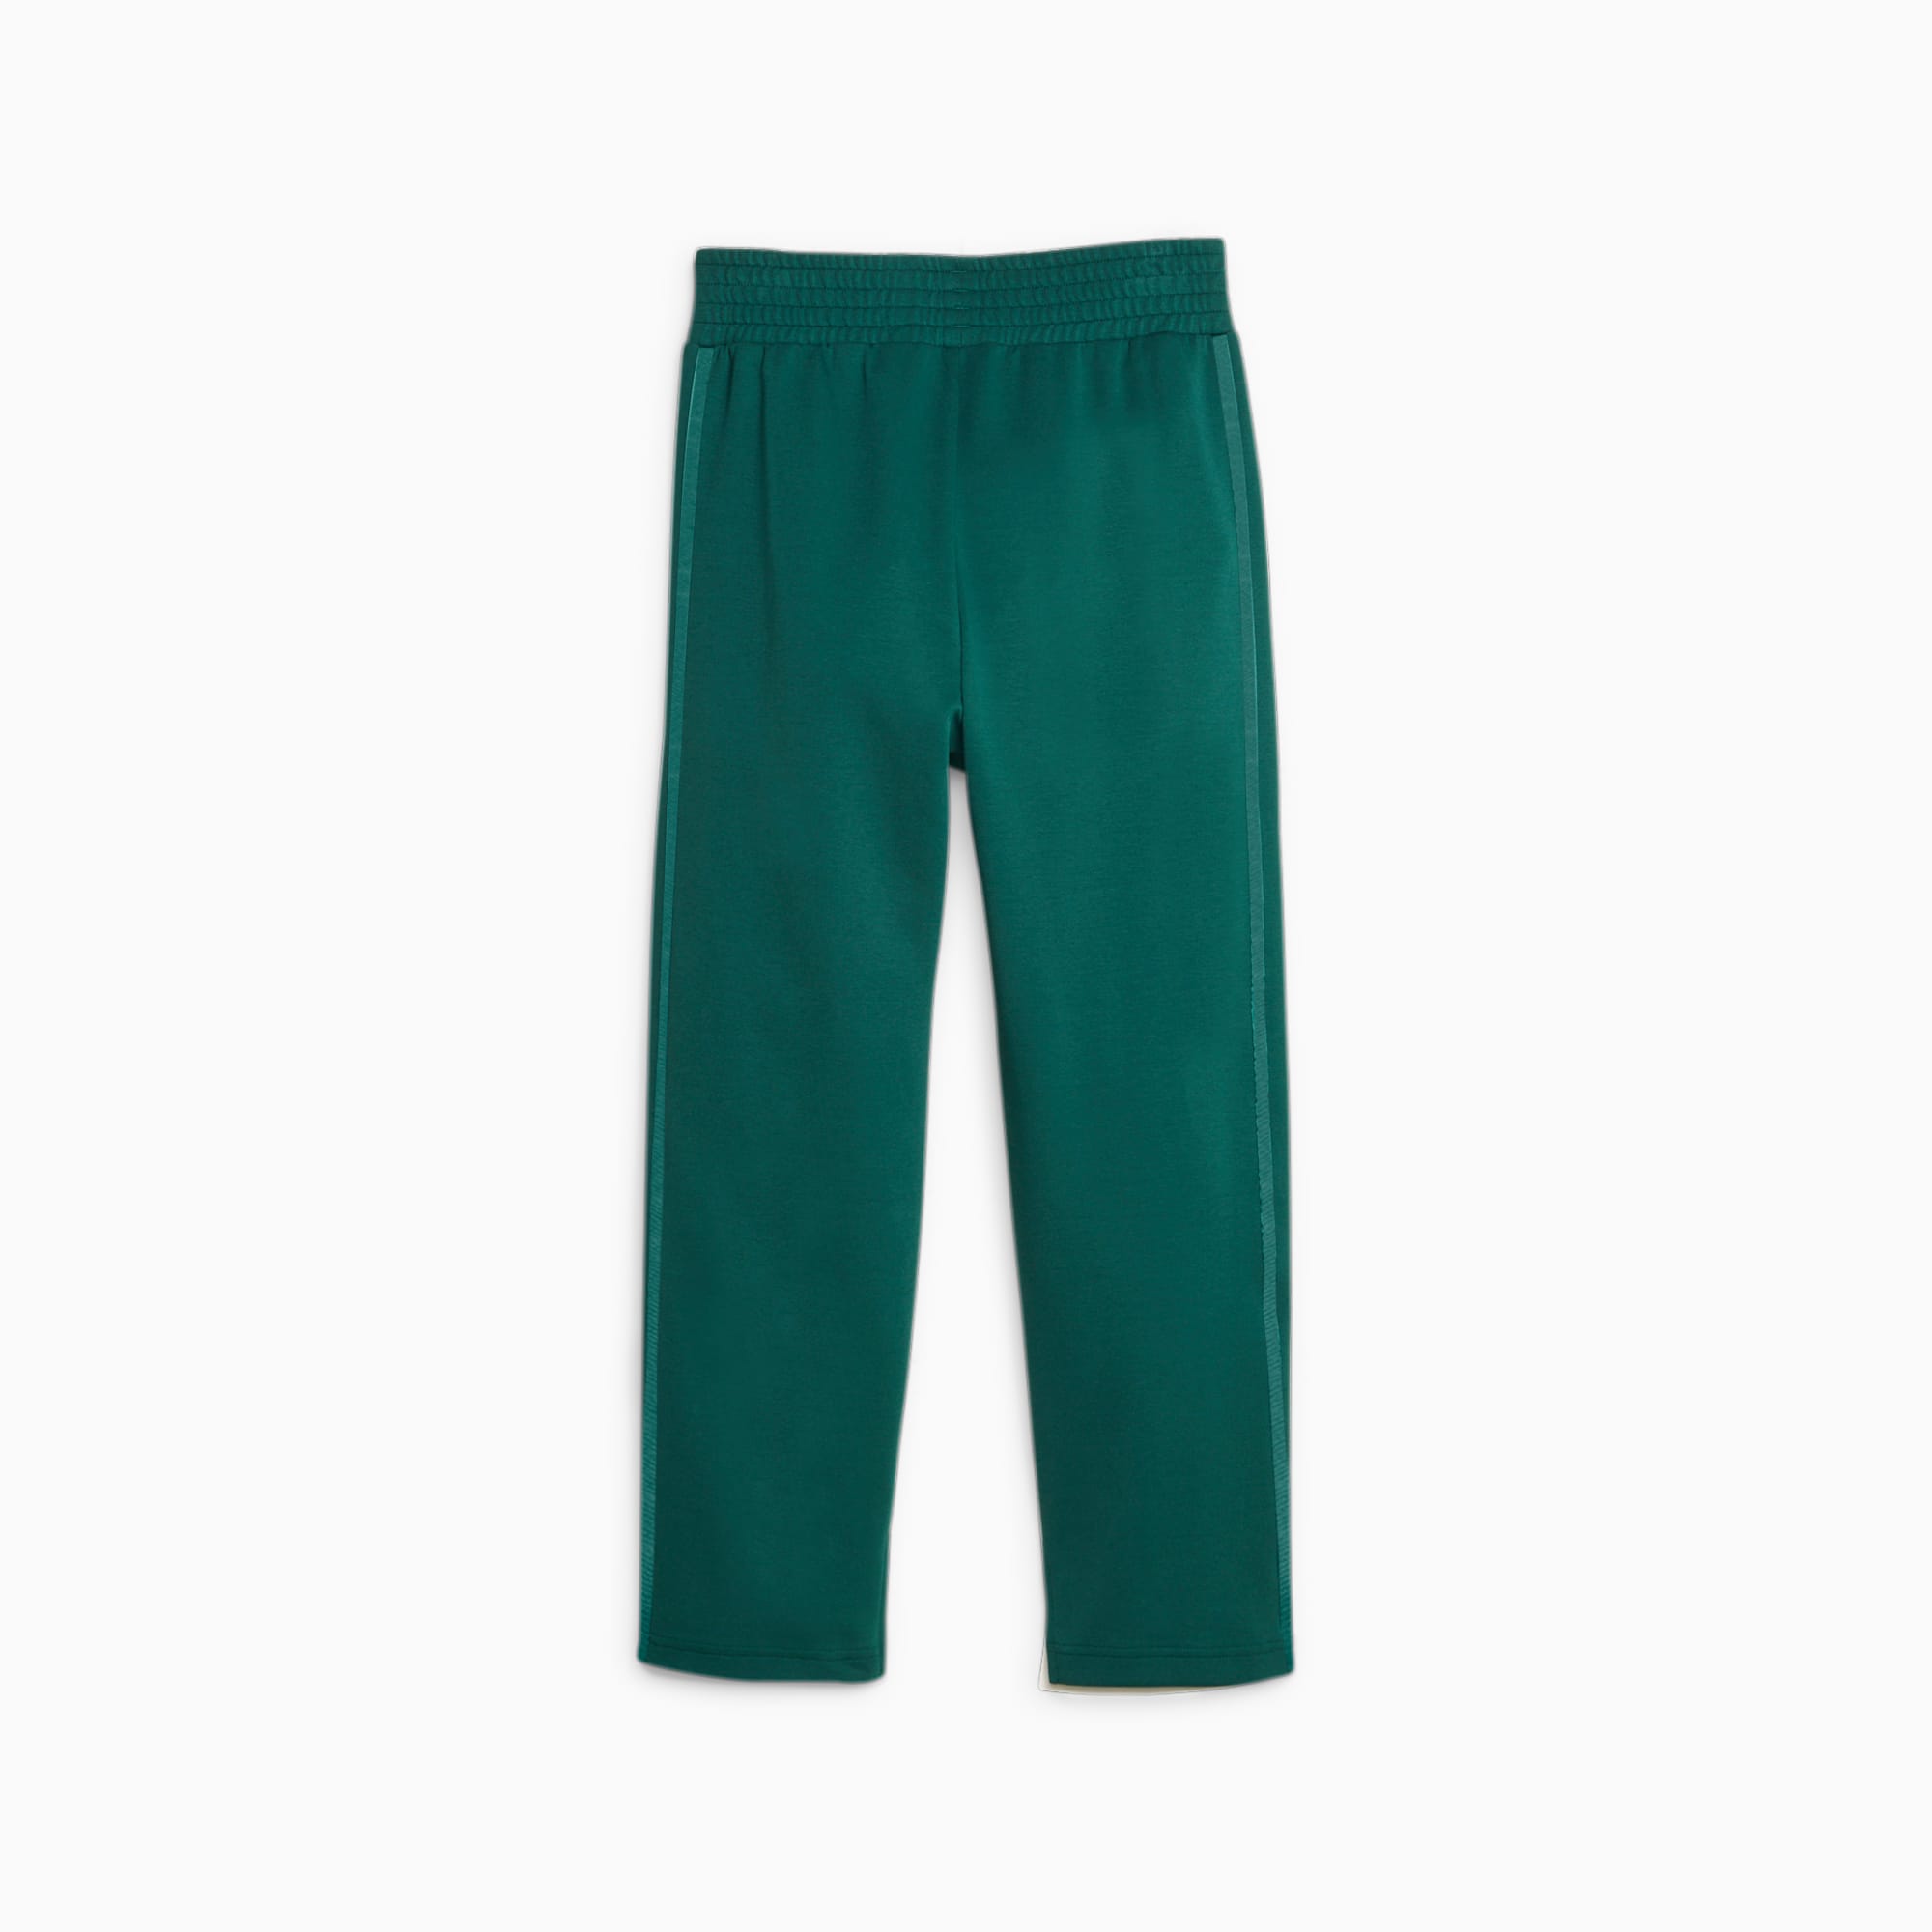 Pantaloni T7 A Vita Alta Da Donna, Verde/Altro